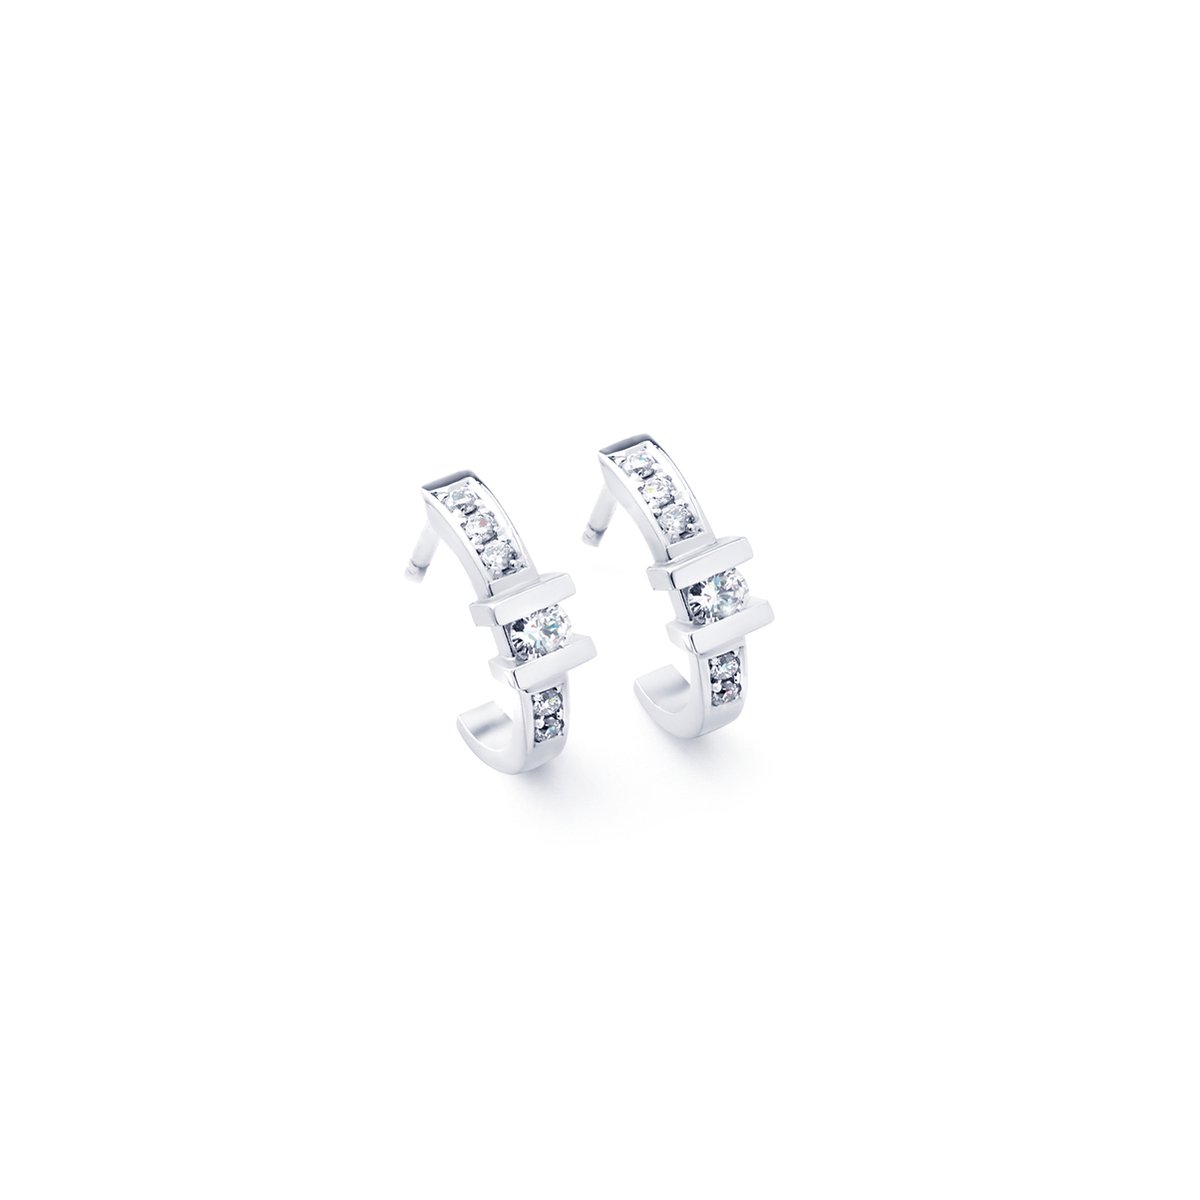 R&C OOR0095 - witgouden oorstekers 14 krt - diamant - uitverkoop